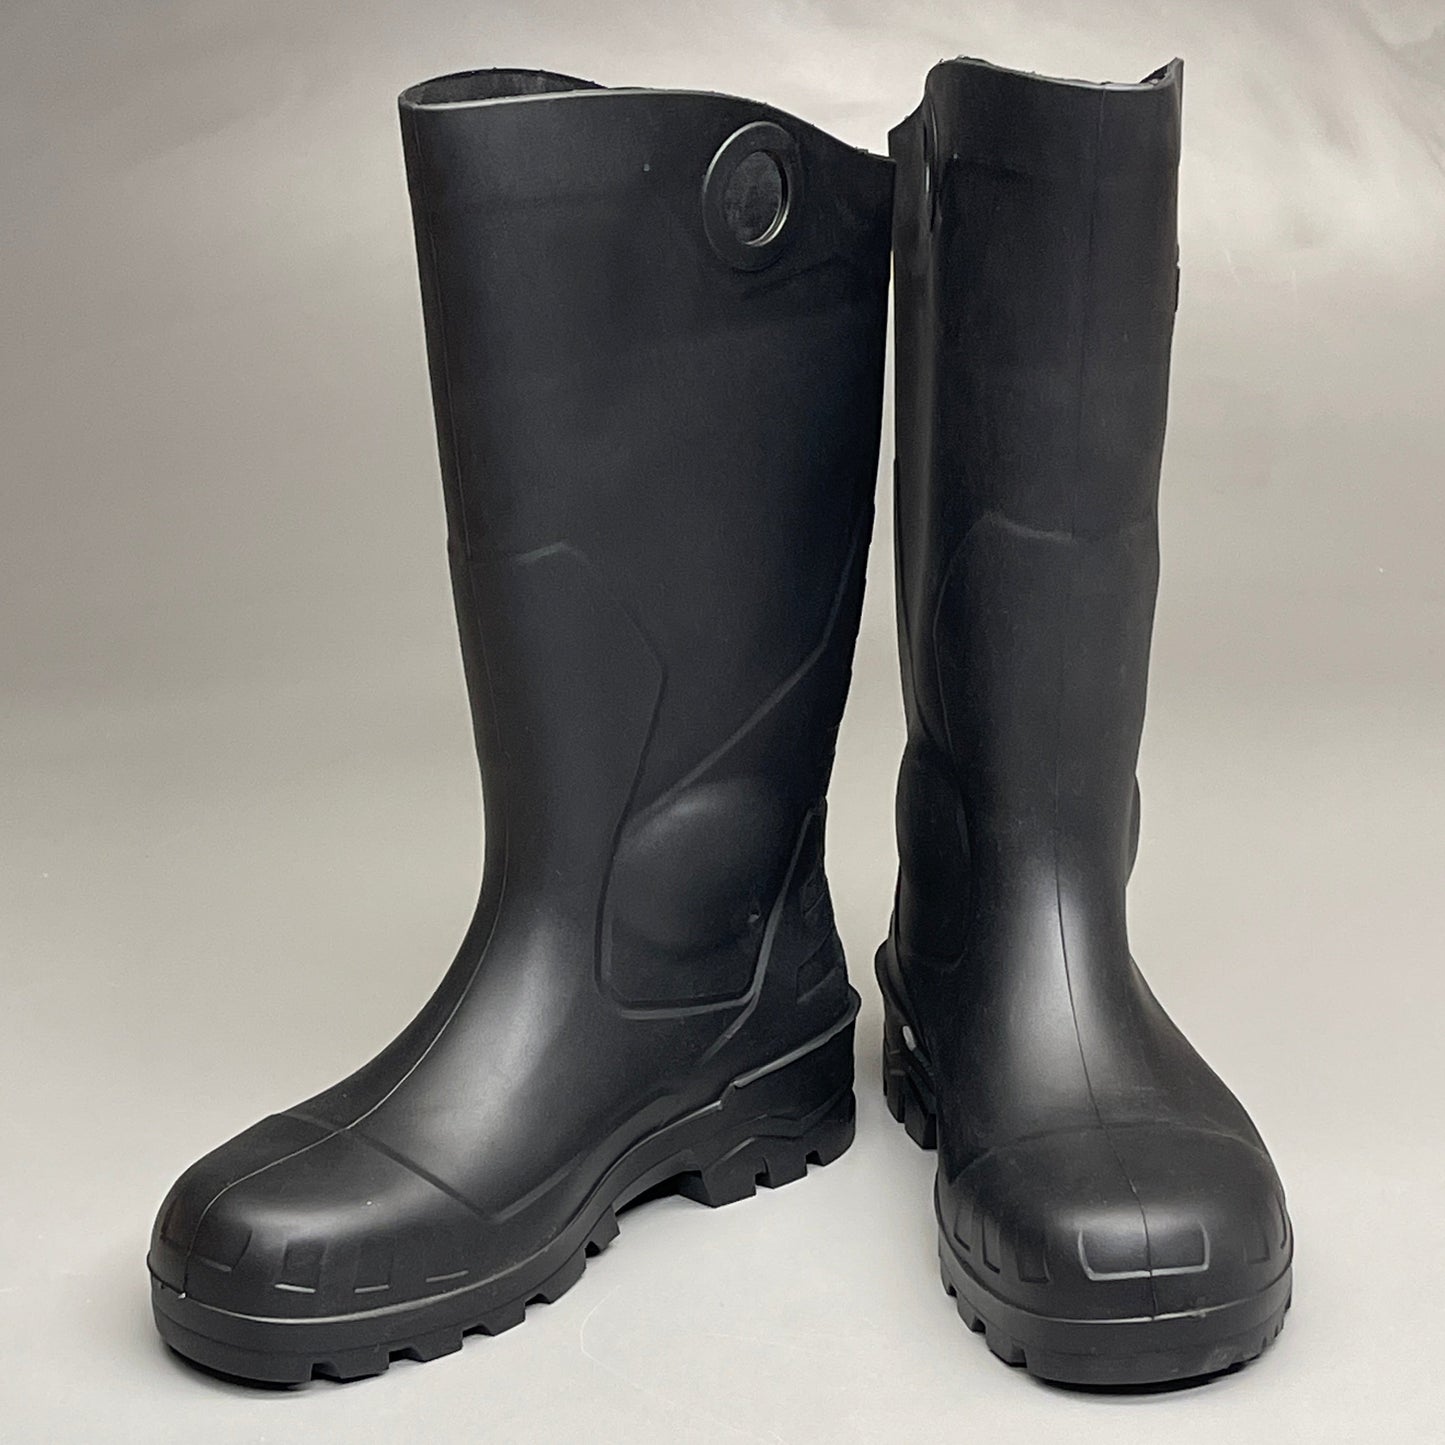 DUNLOP Steel Toe Safety Boots Waterproof Black Sz M 3 W 5 #86776